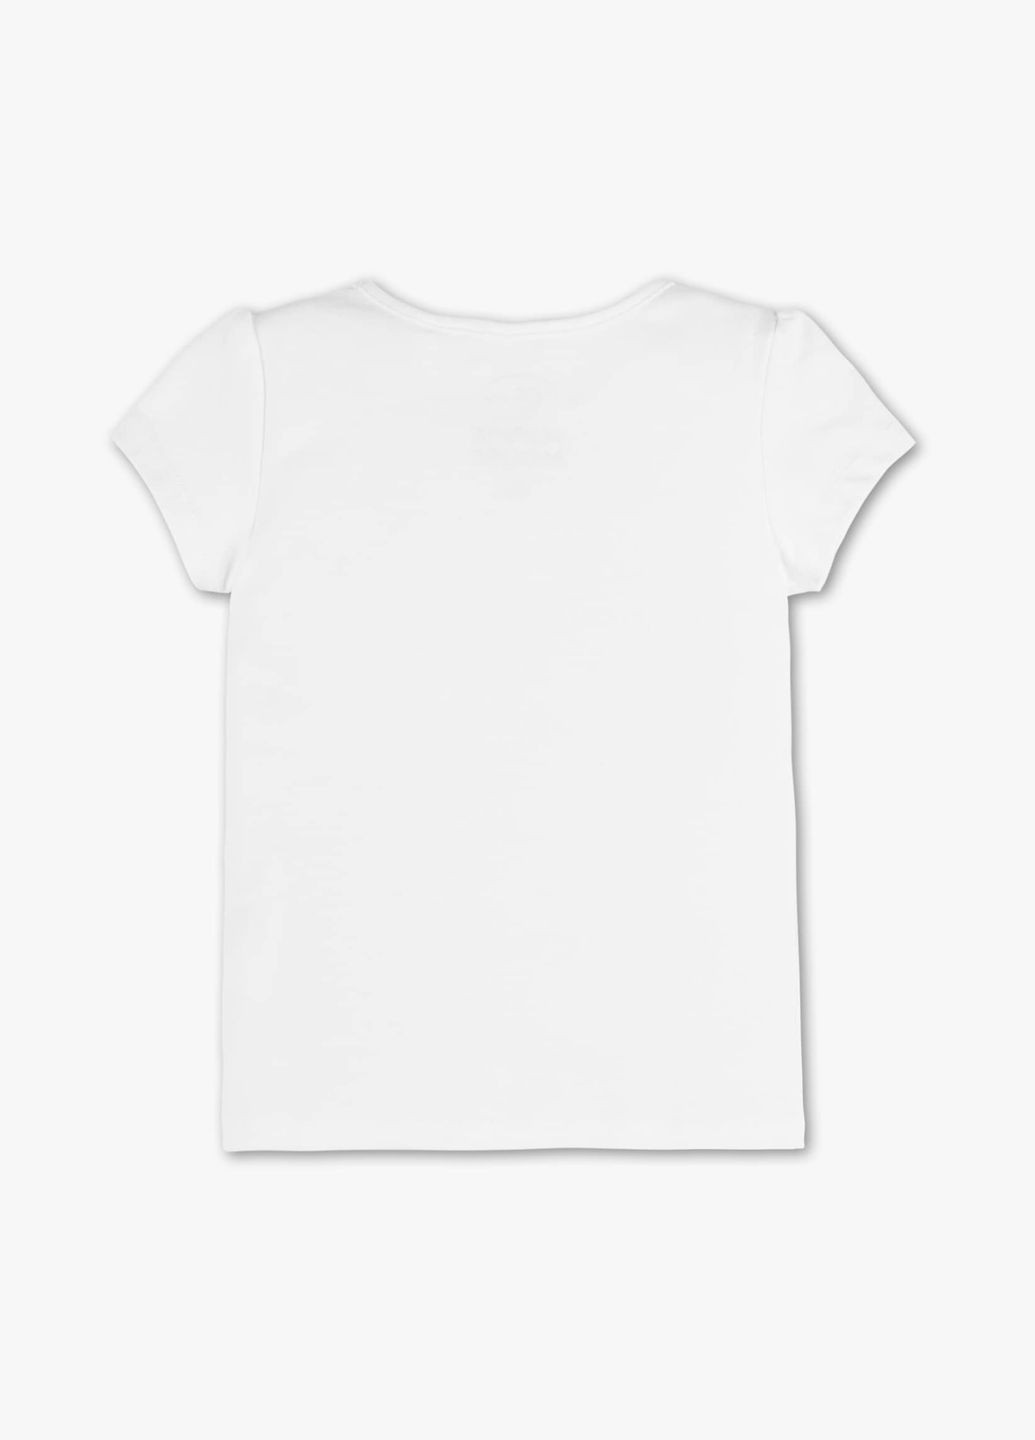 Белая летняя детская футболка для девочки 140 размер белая 2002728 C&A